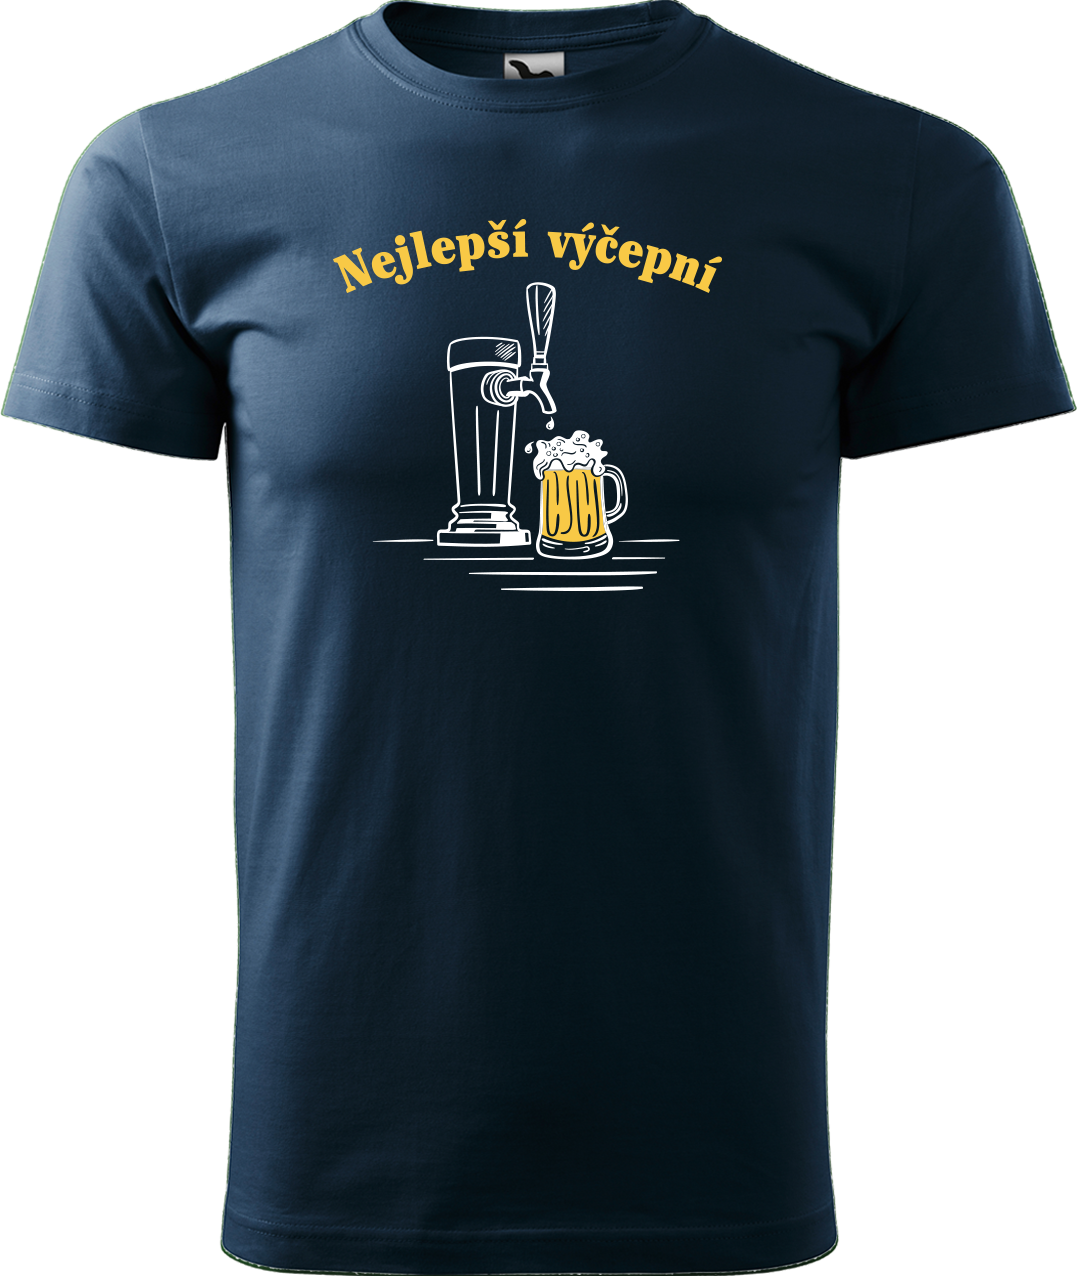 Pivní tričko - Nejlepší výčepní Velikost: L, Barva: Námořní modrá (02)